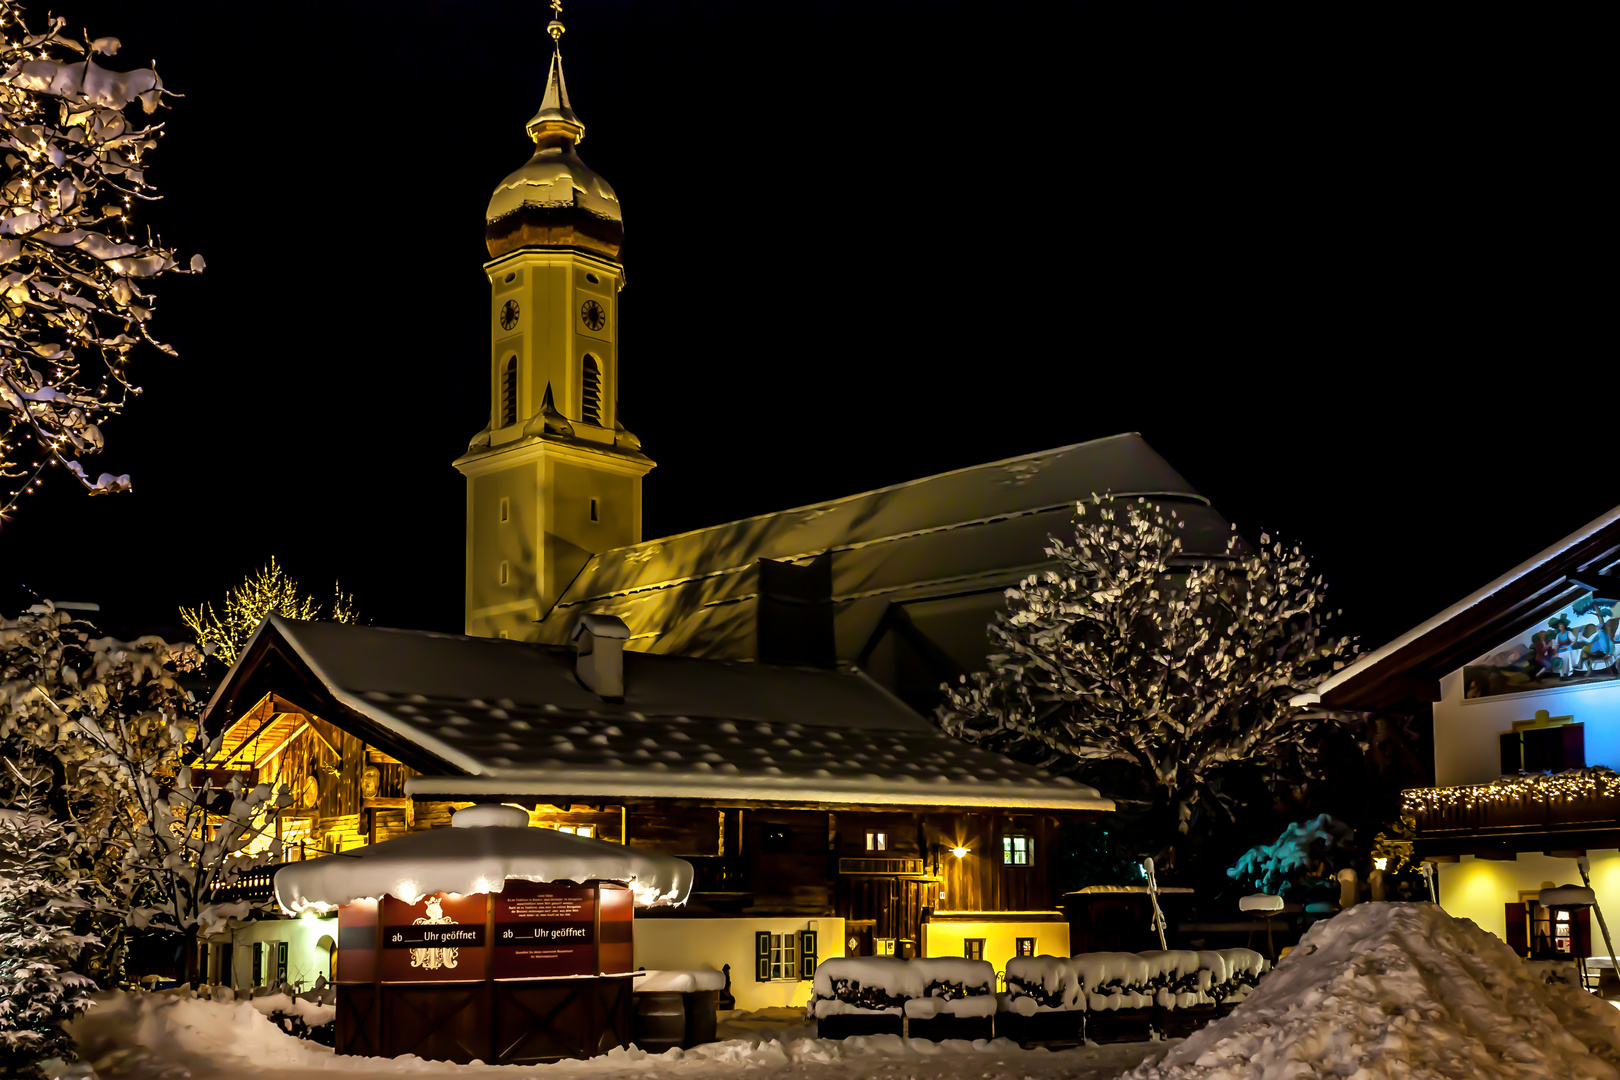 Winter in Garmisch-Partenkirchen